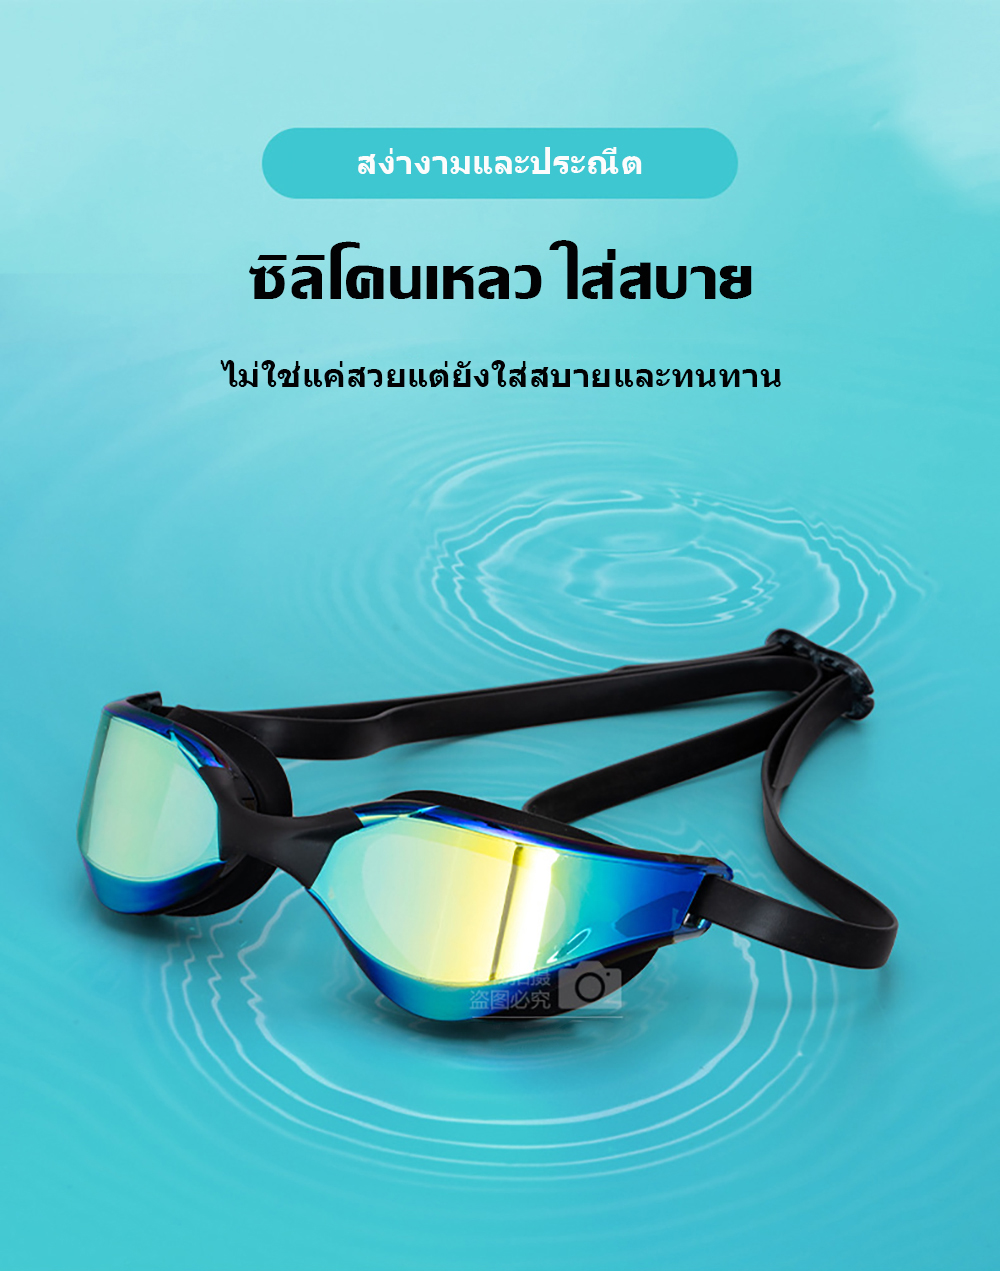 เกี่ยวกับสินค้า แว่นตาว่ายน้ำผู้ใหญ่ HD กันน้ำและป้องกันหมอก Swimming Goggles แว่นตาว่ายน้ำสำหรับผู้ใหญ่สำหรับฝึกการแข่งขันระดับมืออาชีพ